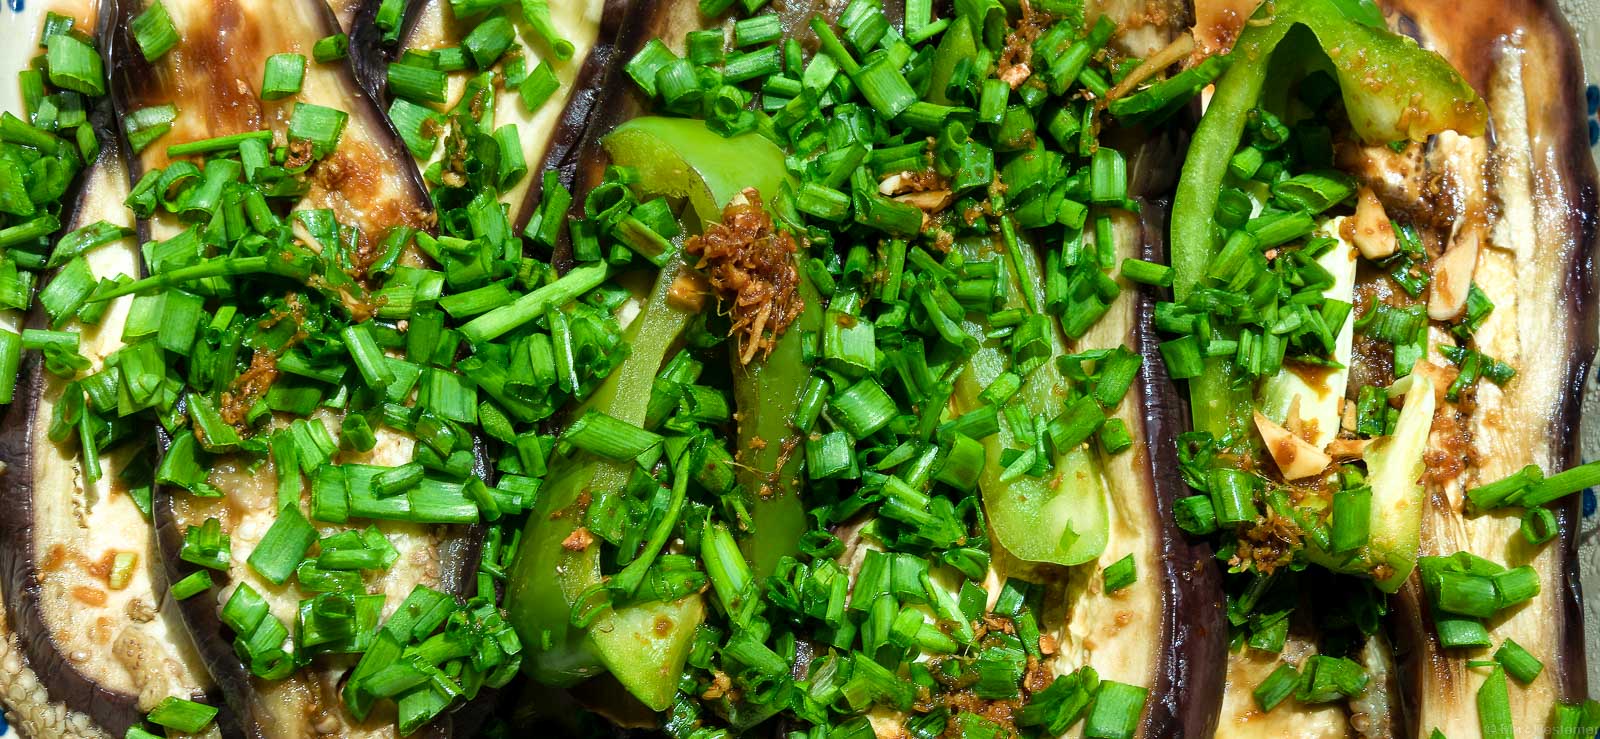 In meiner Foodfotografie habe ich diese Auberginengericht aufgenommen. Auf den geschnittenen hellen Auberginen liegt grüner Schnittlauch.